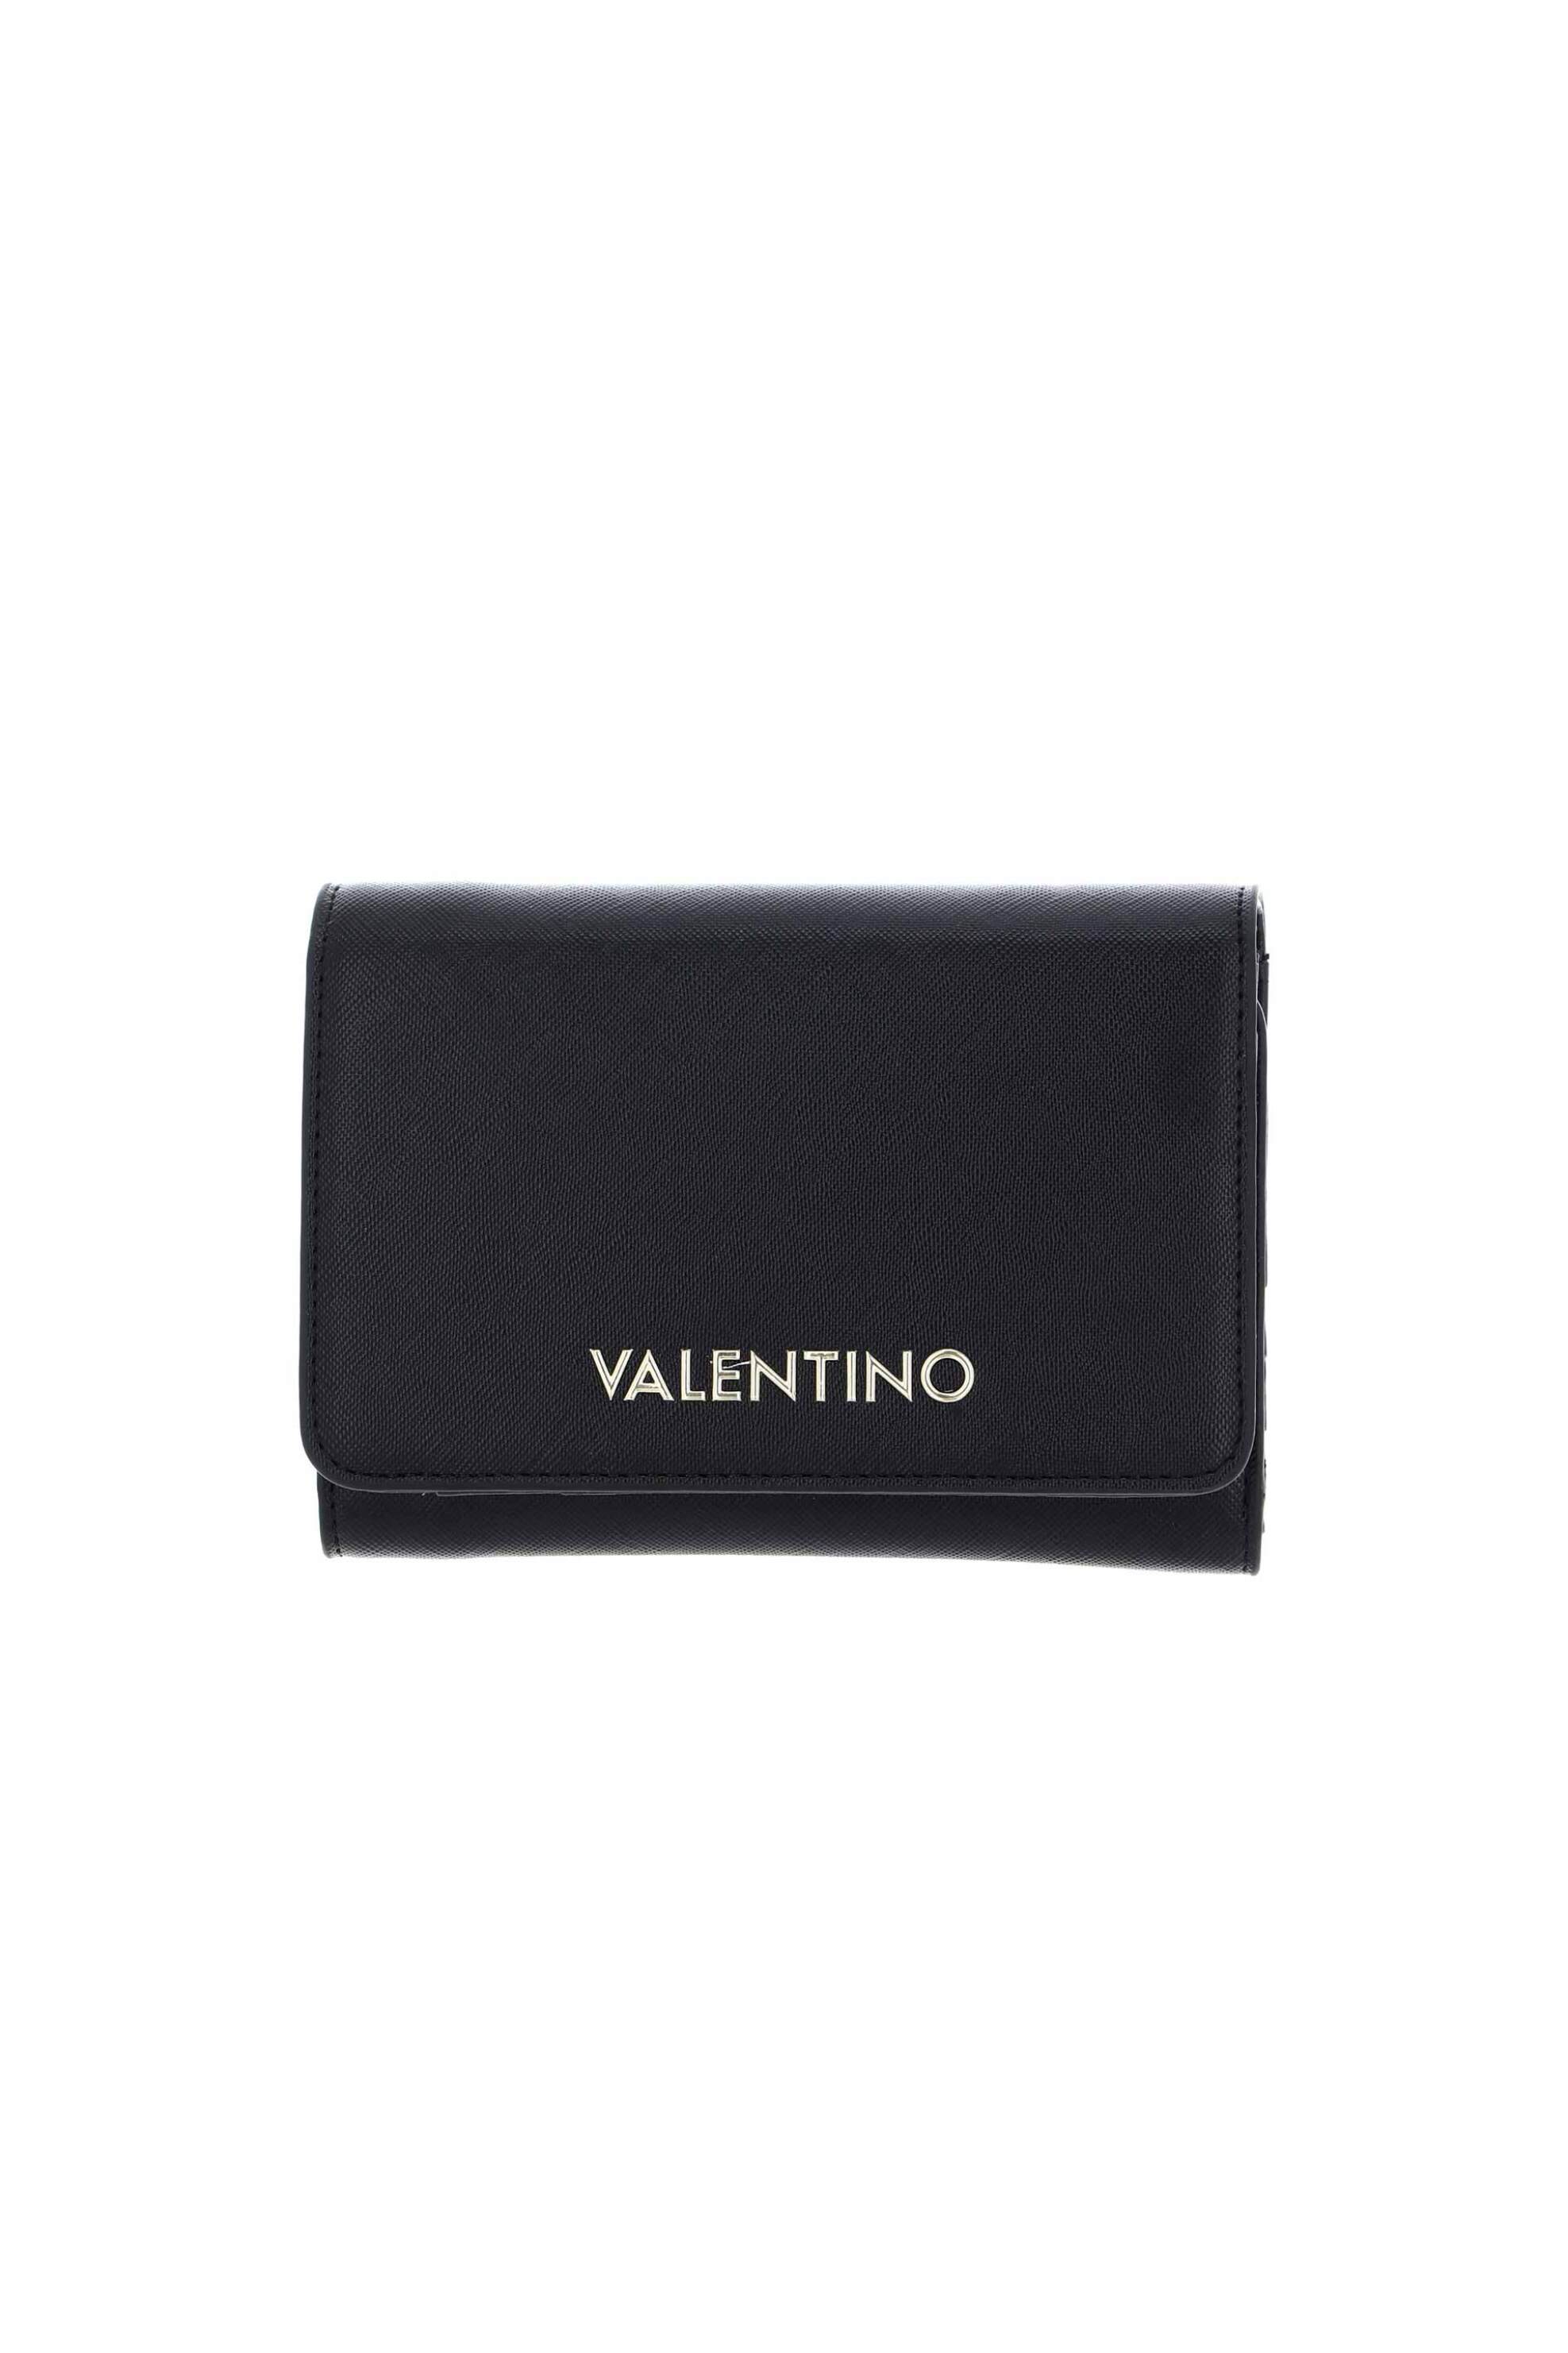 Γυναίκα > ΑΞΕΣΟΥΑΡ > Πορτοφόλια & Θήκες Valentino γυναικείο πορτοφόλι μονόχρωμο με contrast λογότυπο "Zero Re" - 55KVPS7B343/ZER Μαύρο